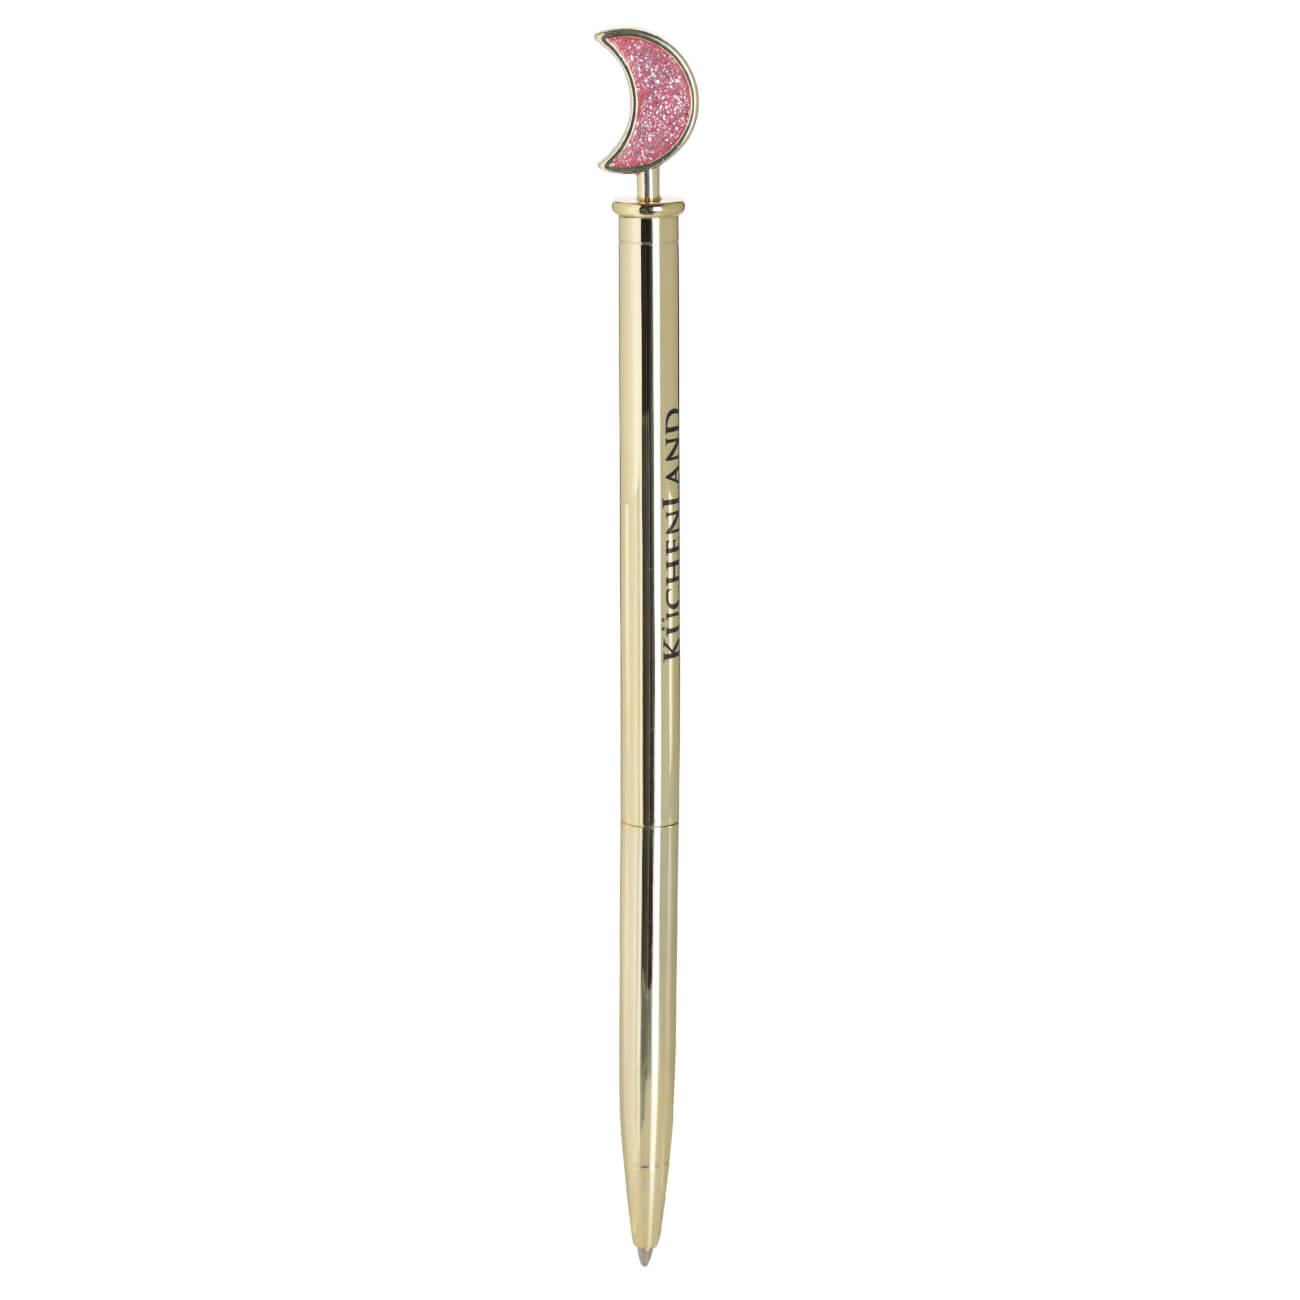 Ручка шариковая, 15 см, с фигуркой, металл, золотистая, Луна, Draw figure ручка металл шариковая